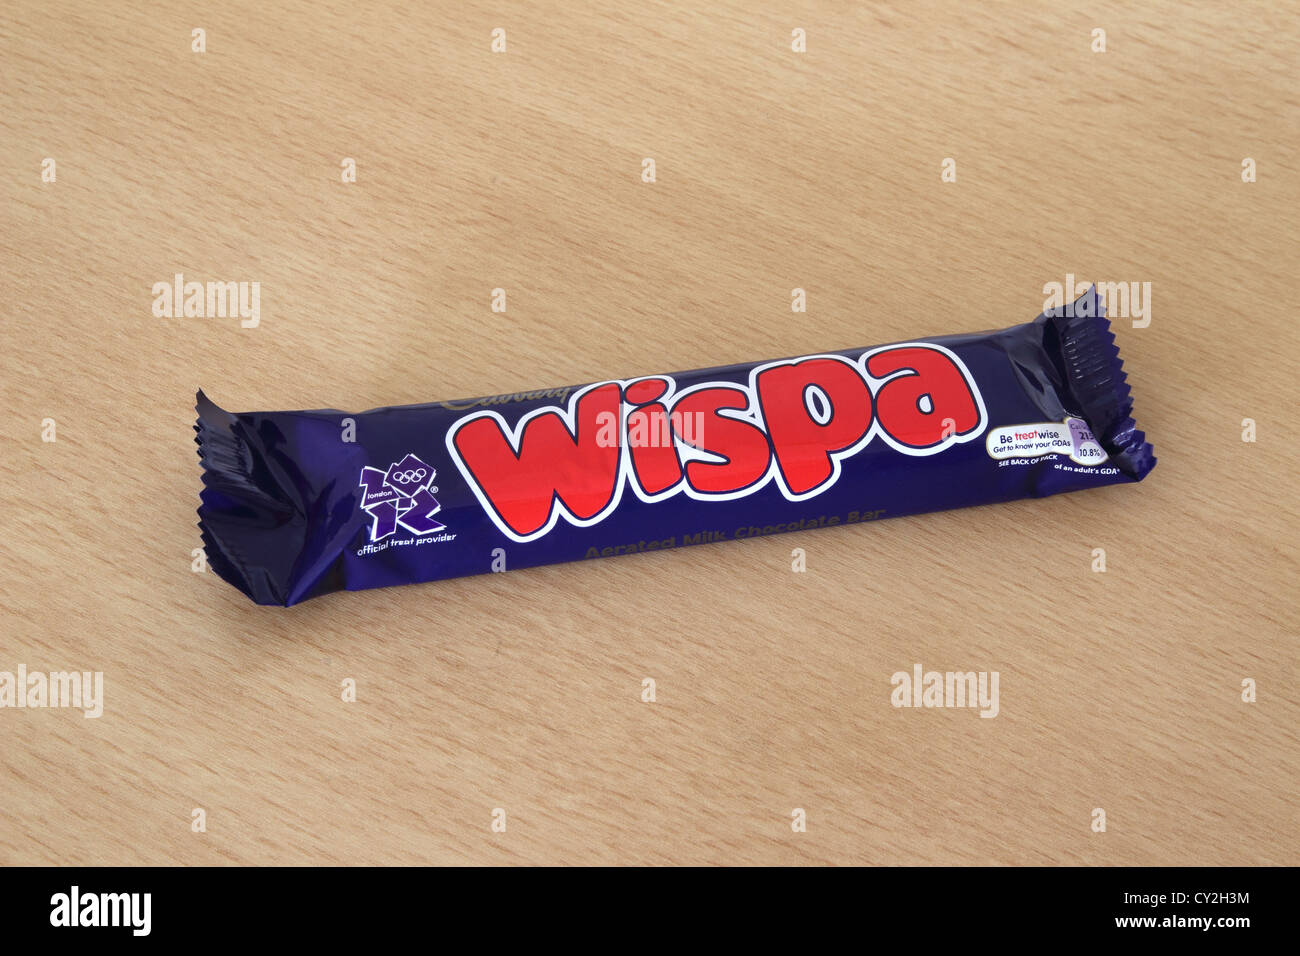 Cadbury Wispa Gold Bar Stock Photo - Alamy